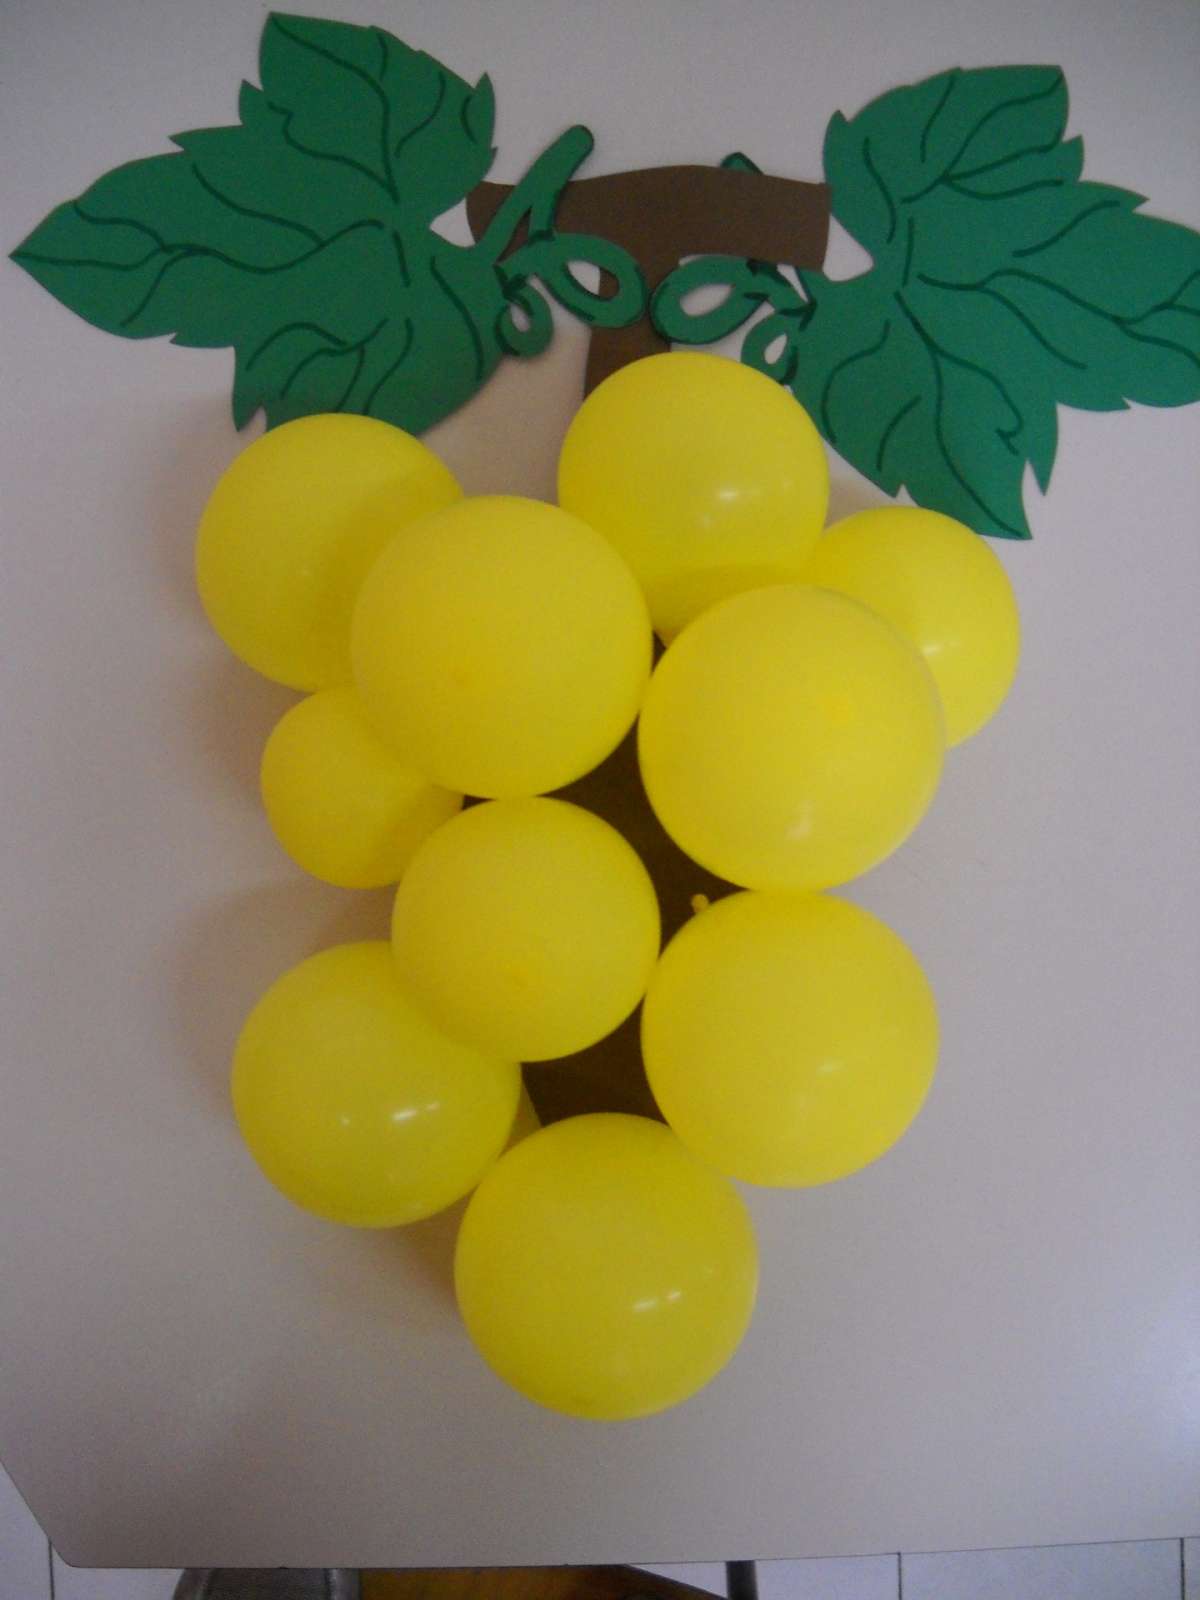 Grappolo d'uva con i palloncini